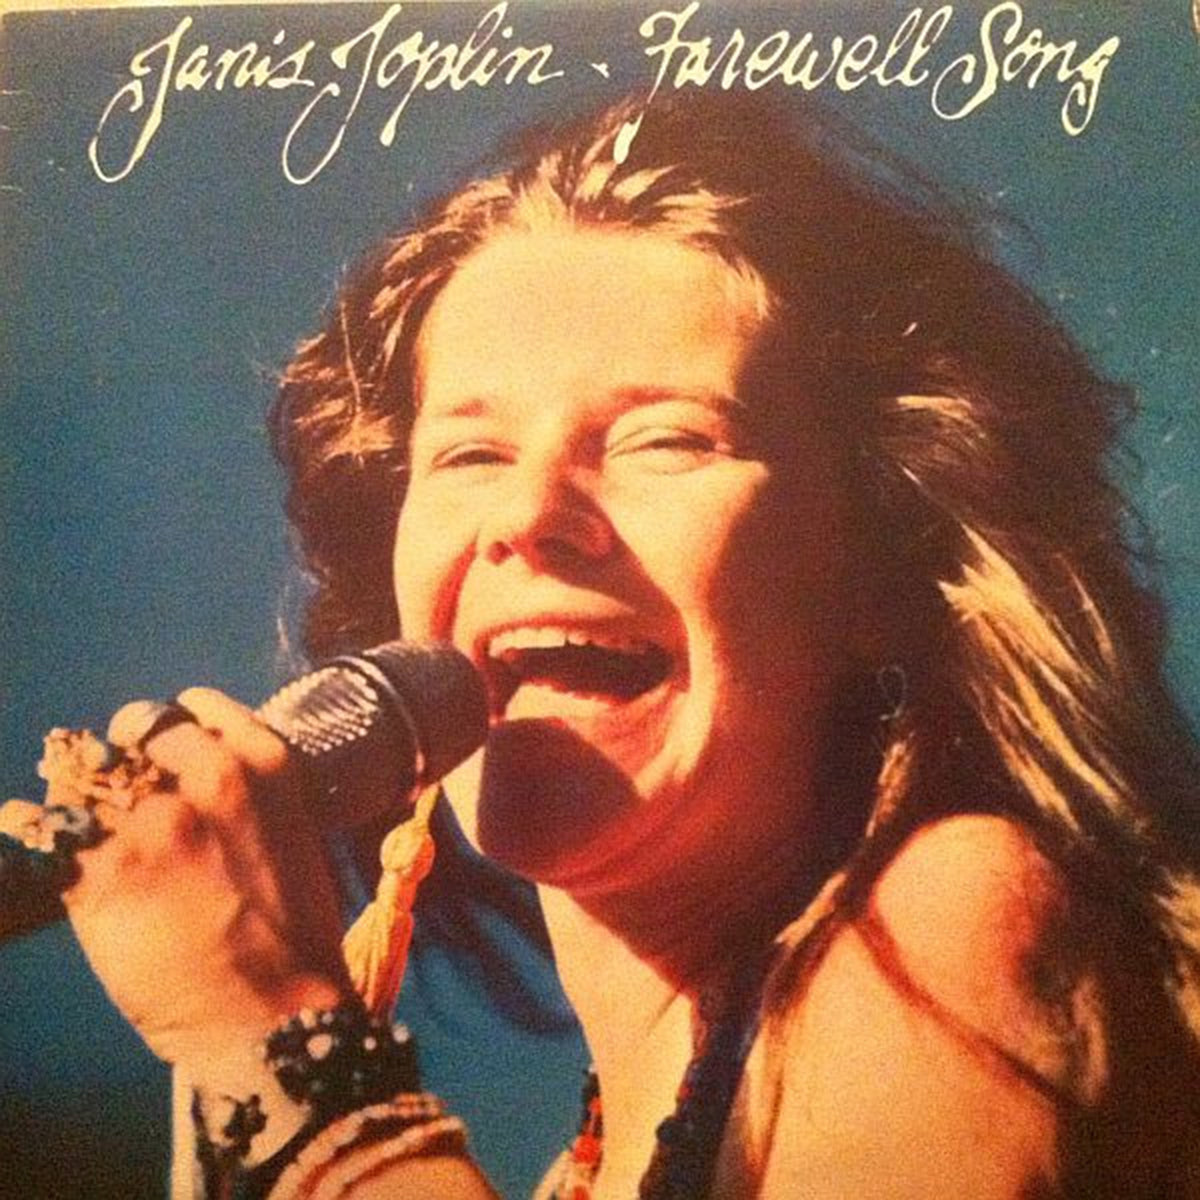 Janis Joplin – Farewell Song - 1982